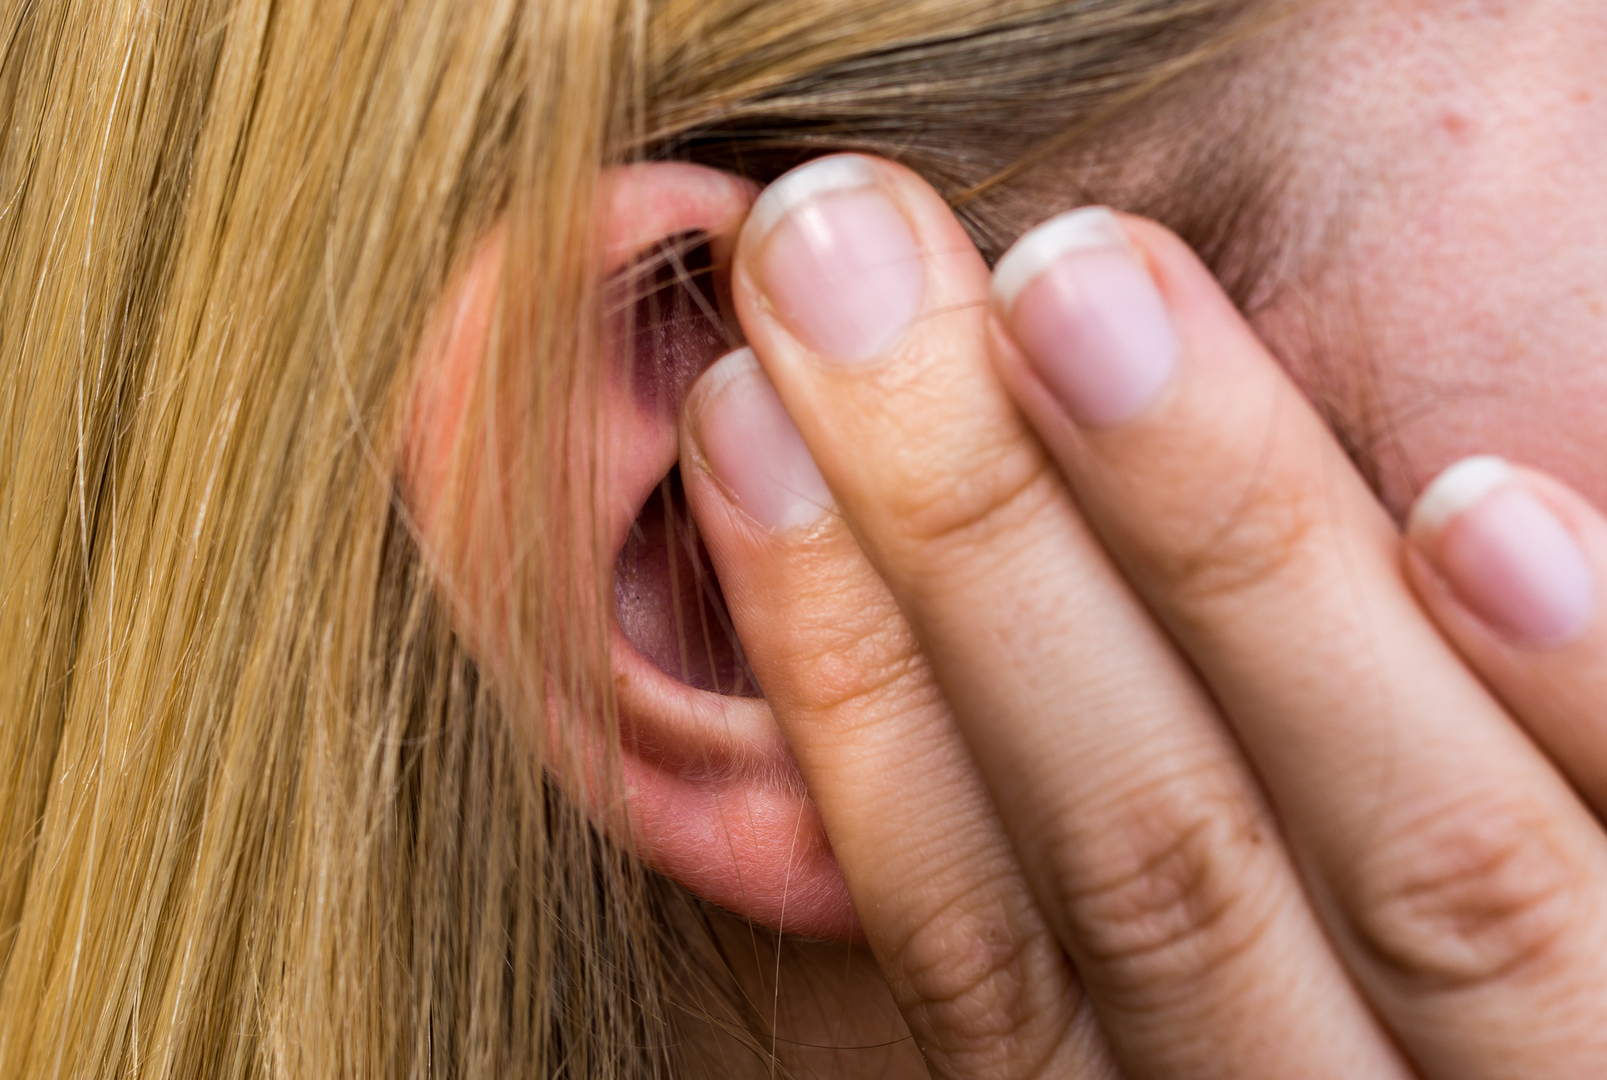 فيروس كورونا يزيد من سوء حالة طنين الأذن